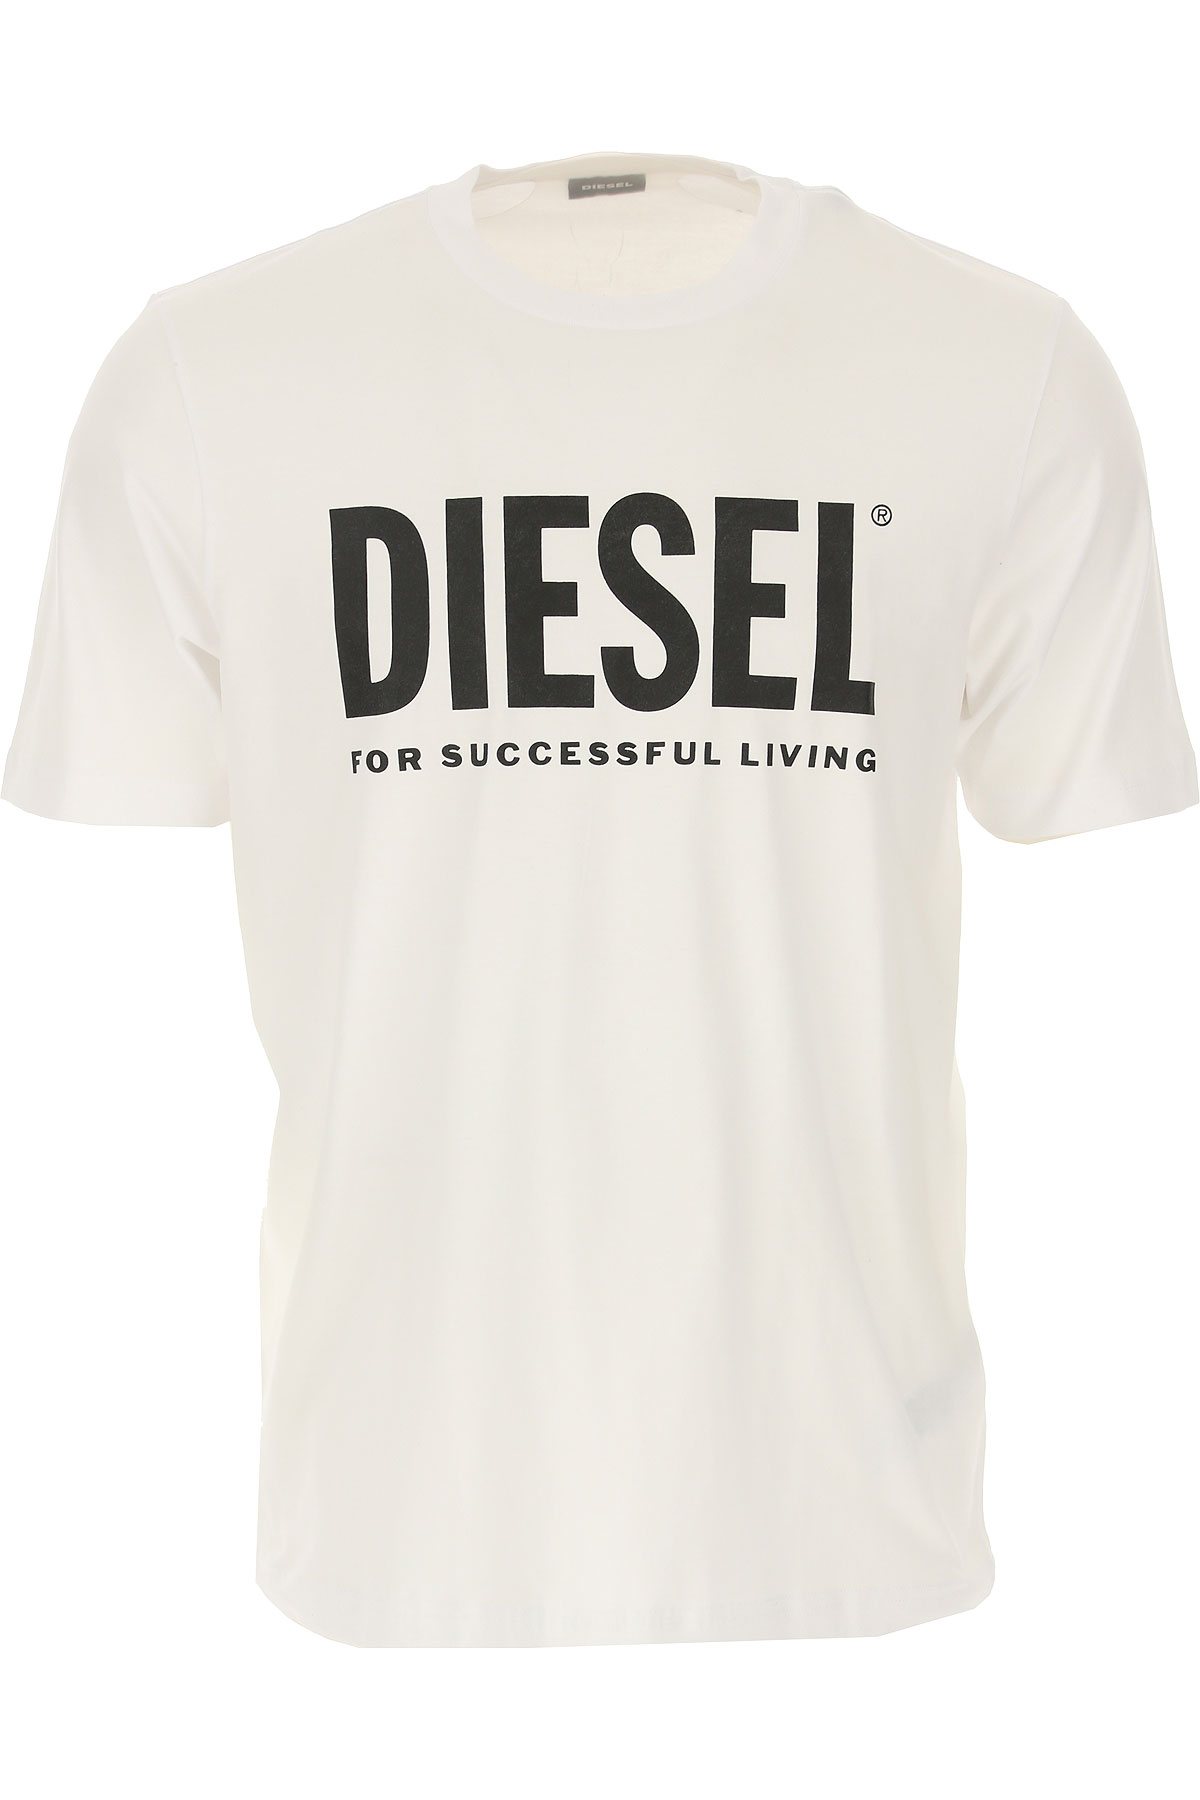 Diesel Sweatshirt für Herren, Kapuzenpulli, Hoodie, Sweats Günstig im Sale, Weiss, Baumwolle, 2017, L M S XL